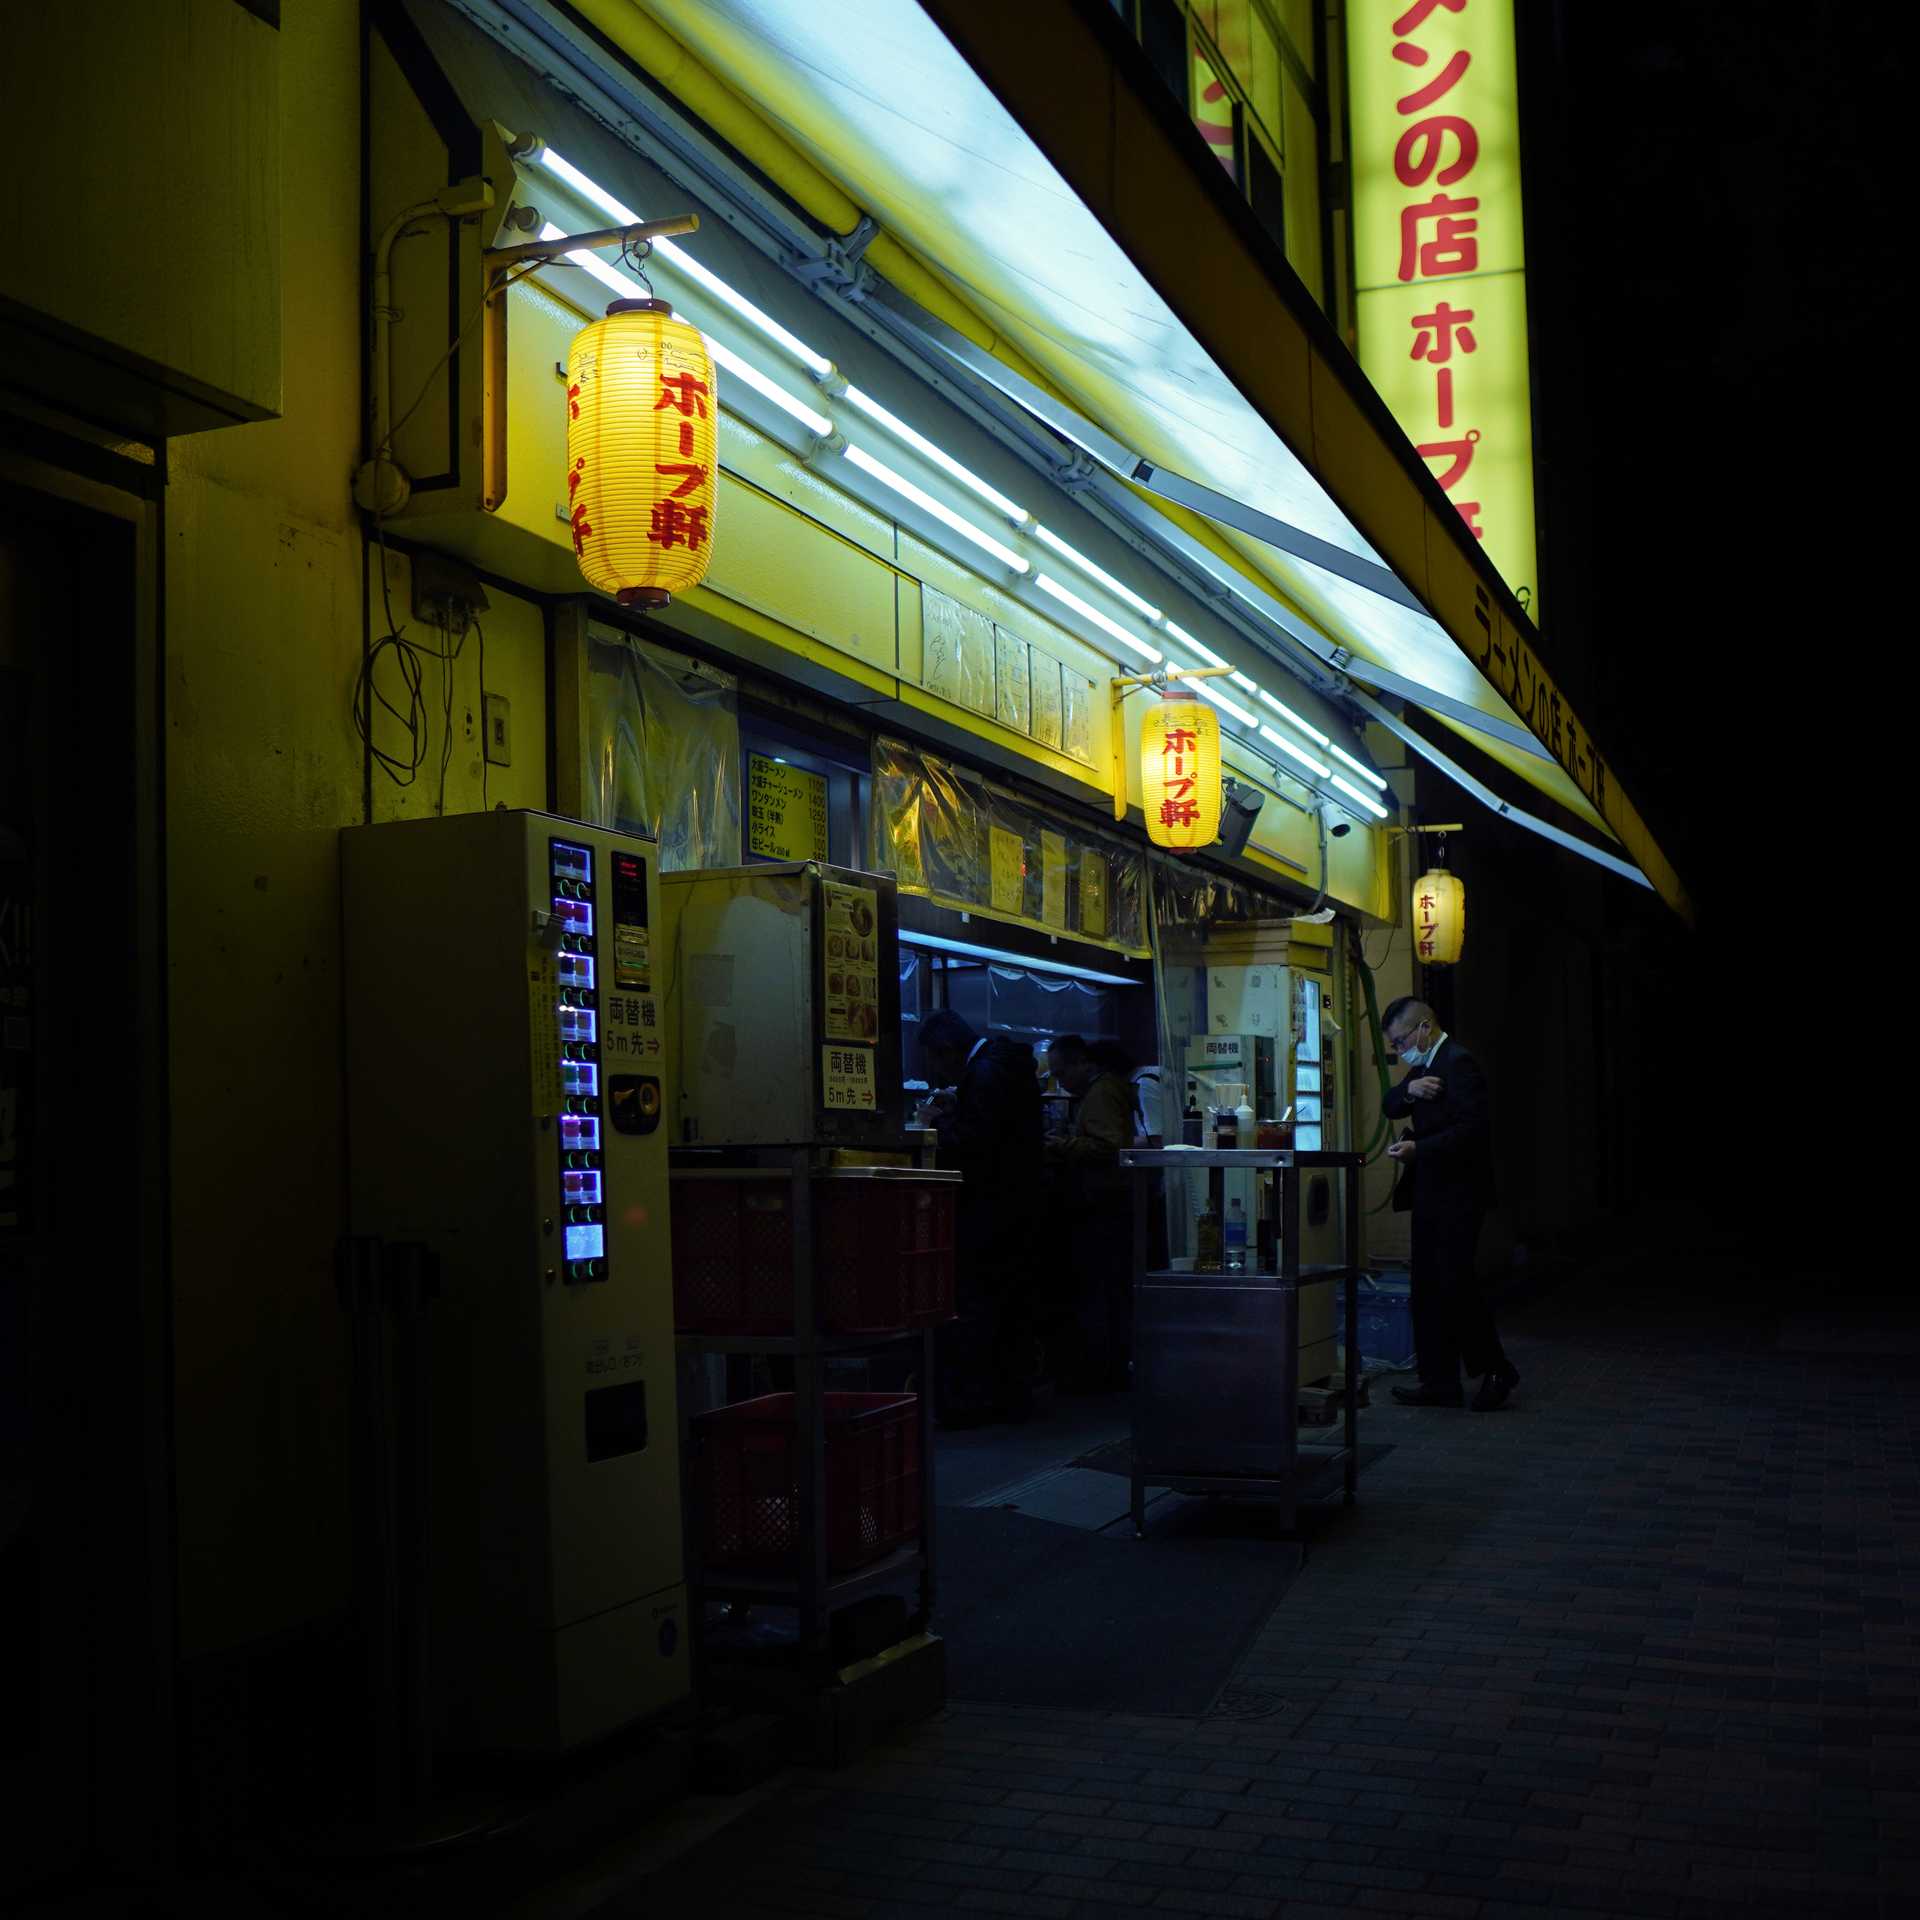 Japanese man street food night tokyo